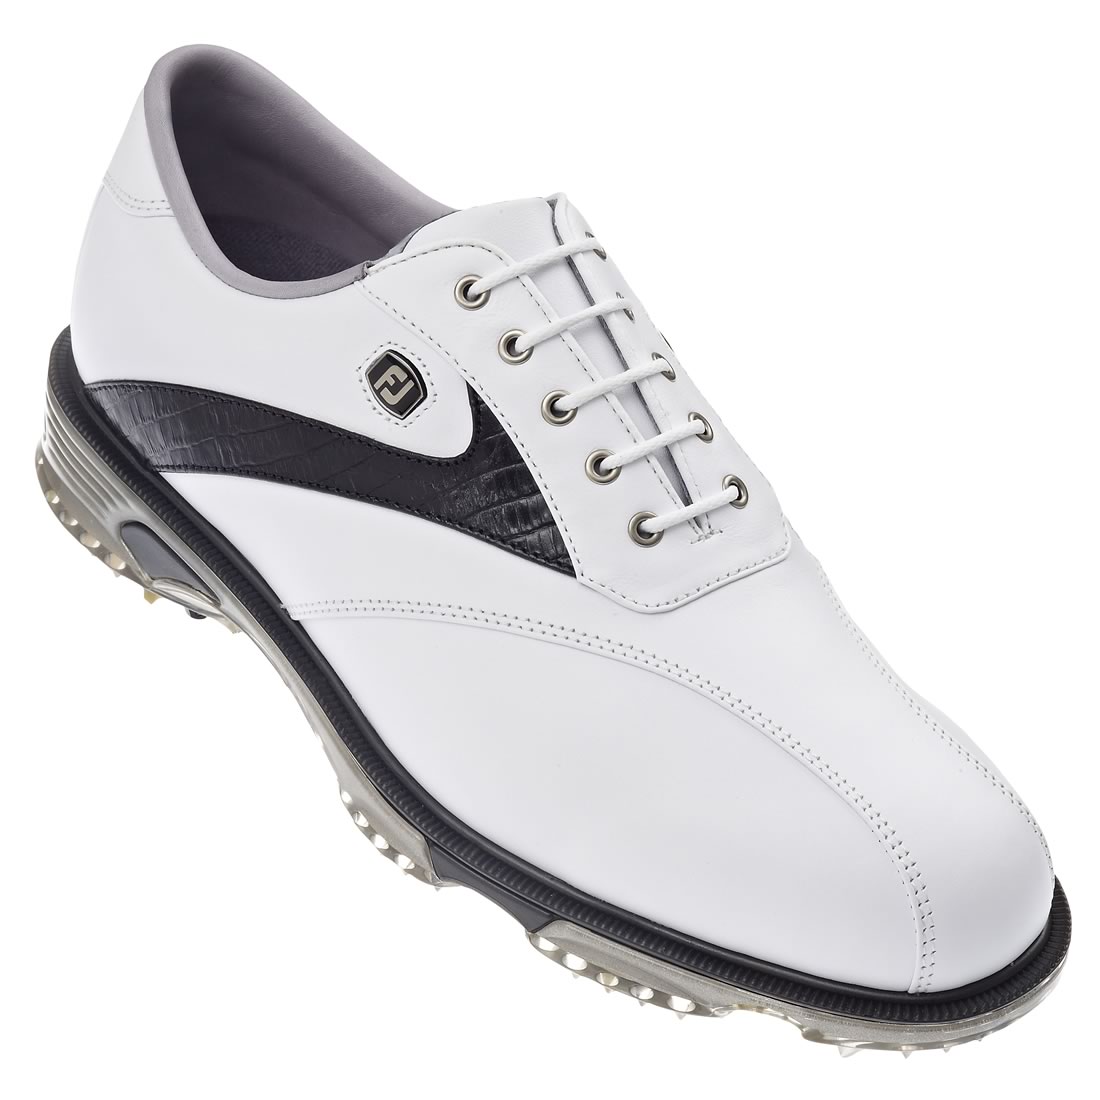 Dryjoys Tour Golf Shoes White/Black #53694